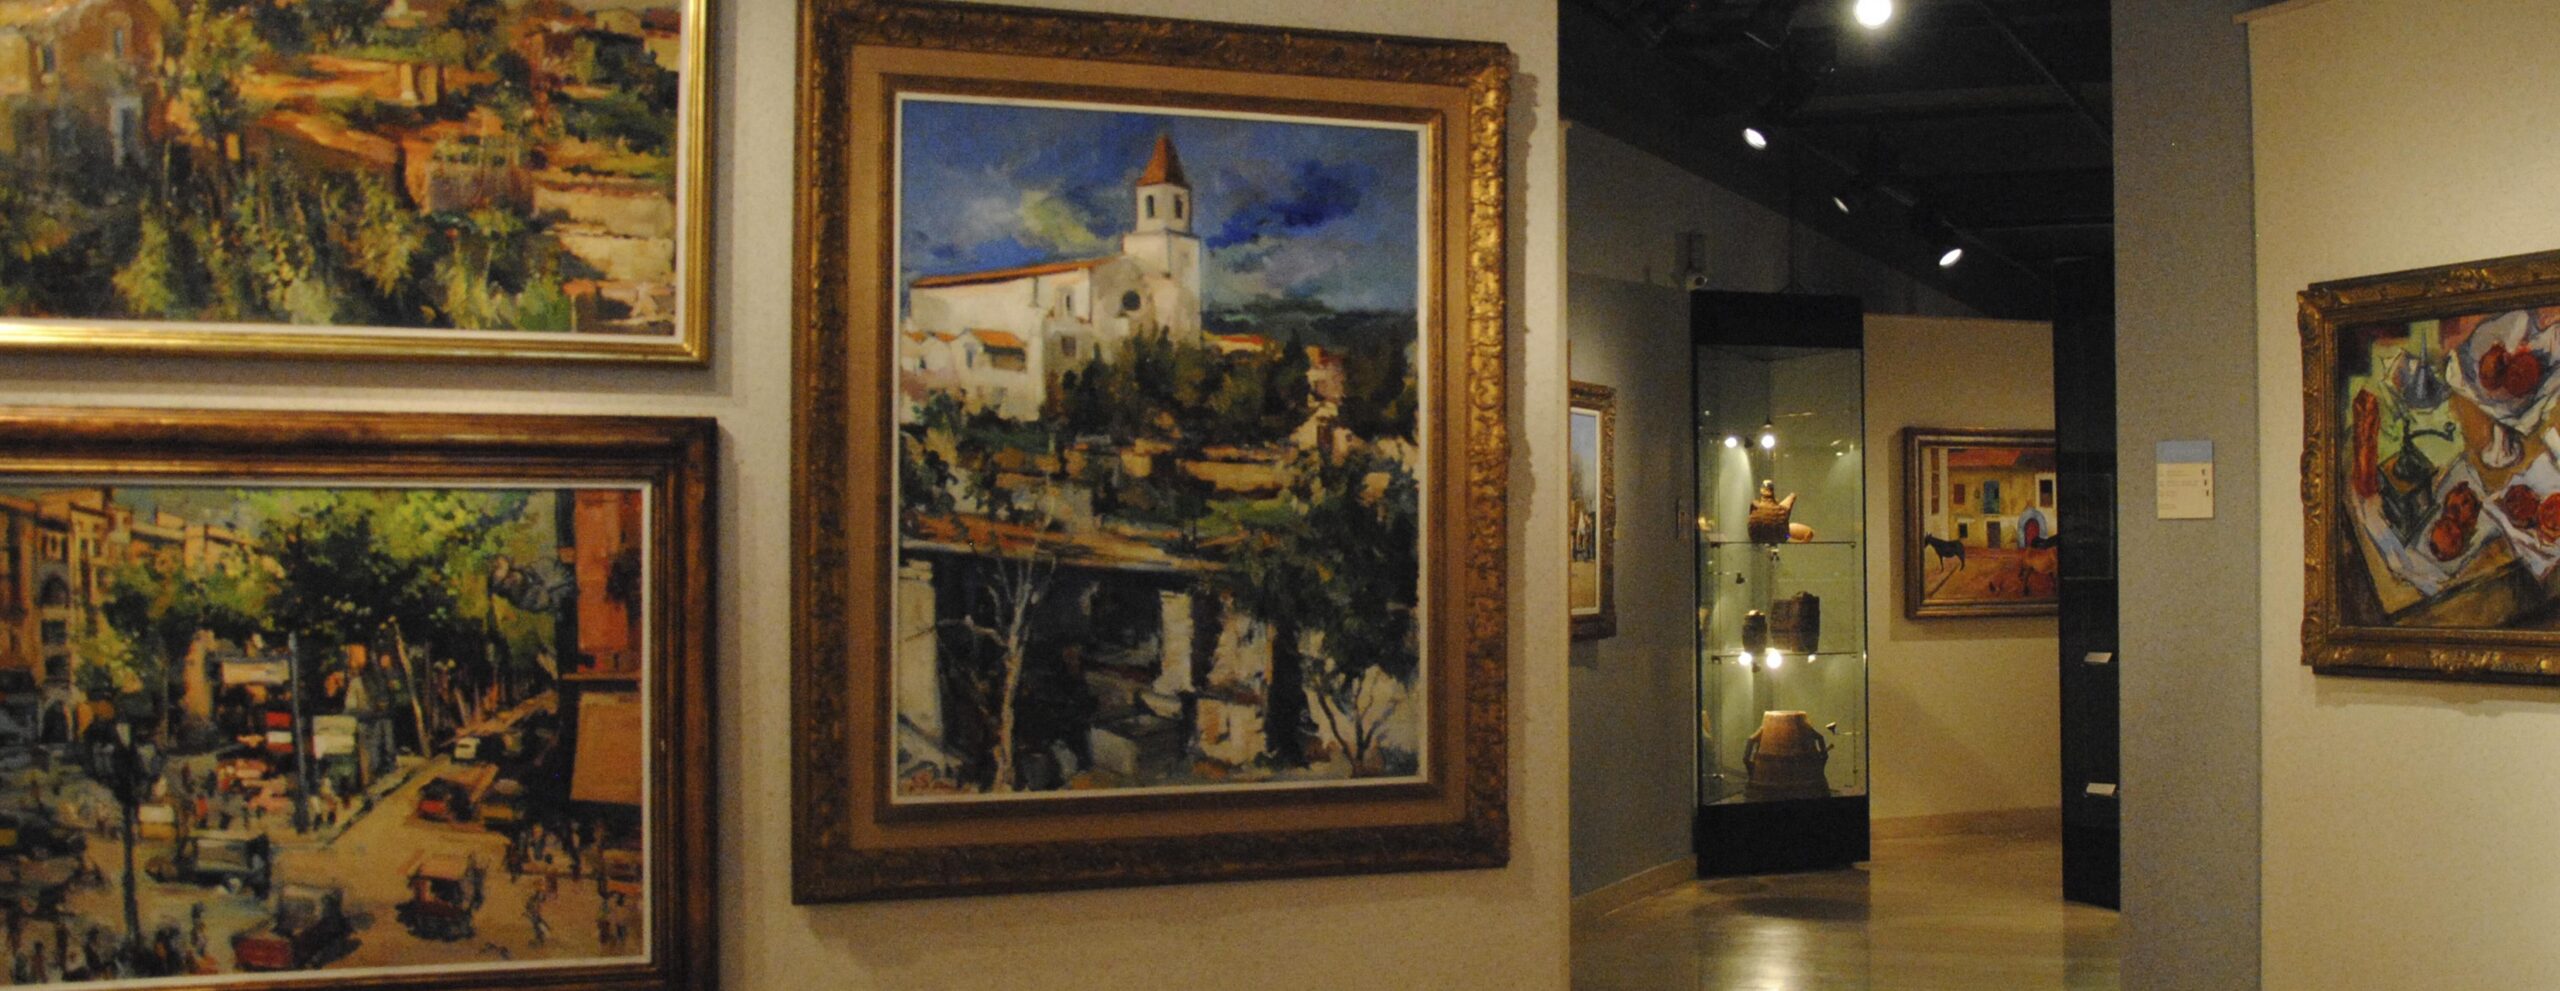 MUSEU DEU		Vendrell (El)	Tarragona	Museo